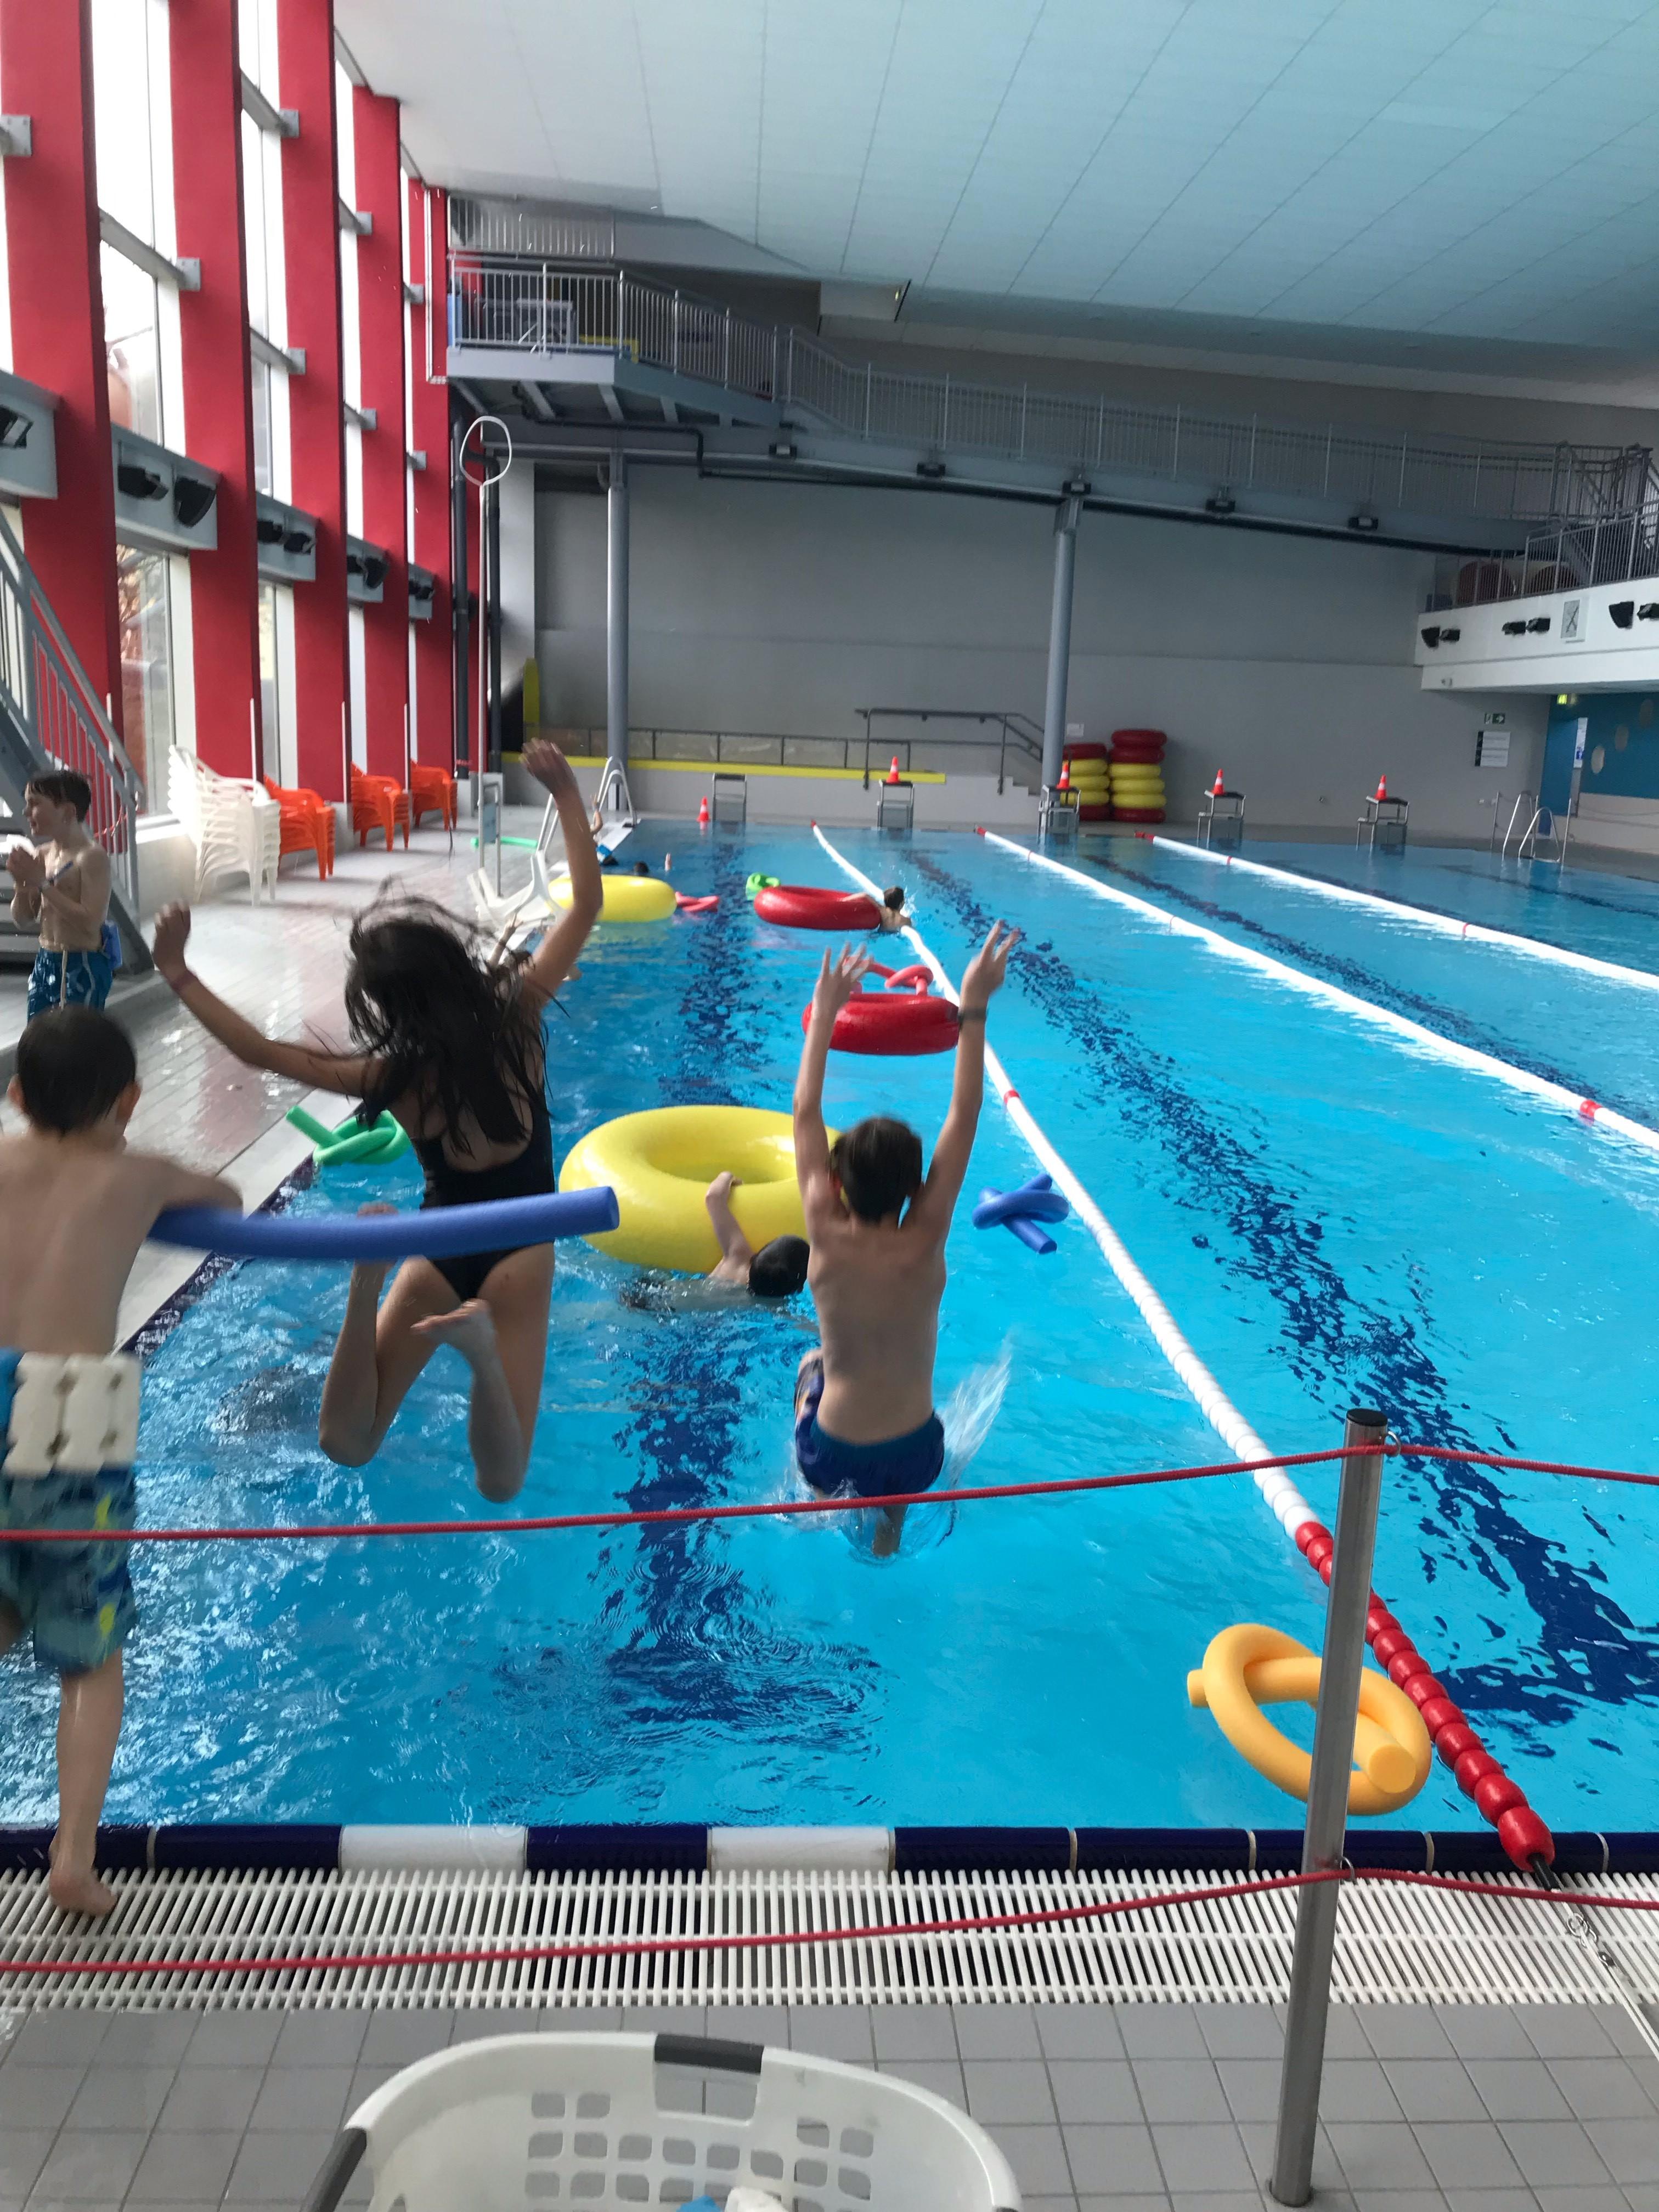 SChwimmkurs für Kinder in Deutschland